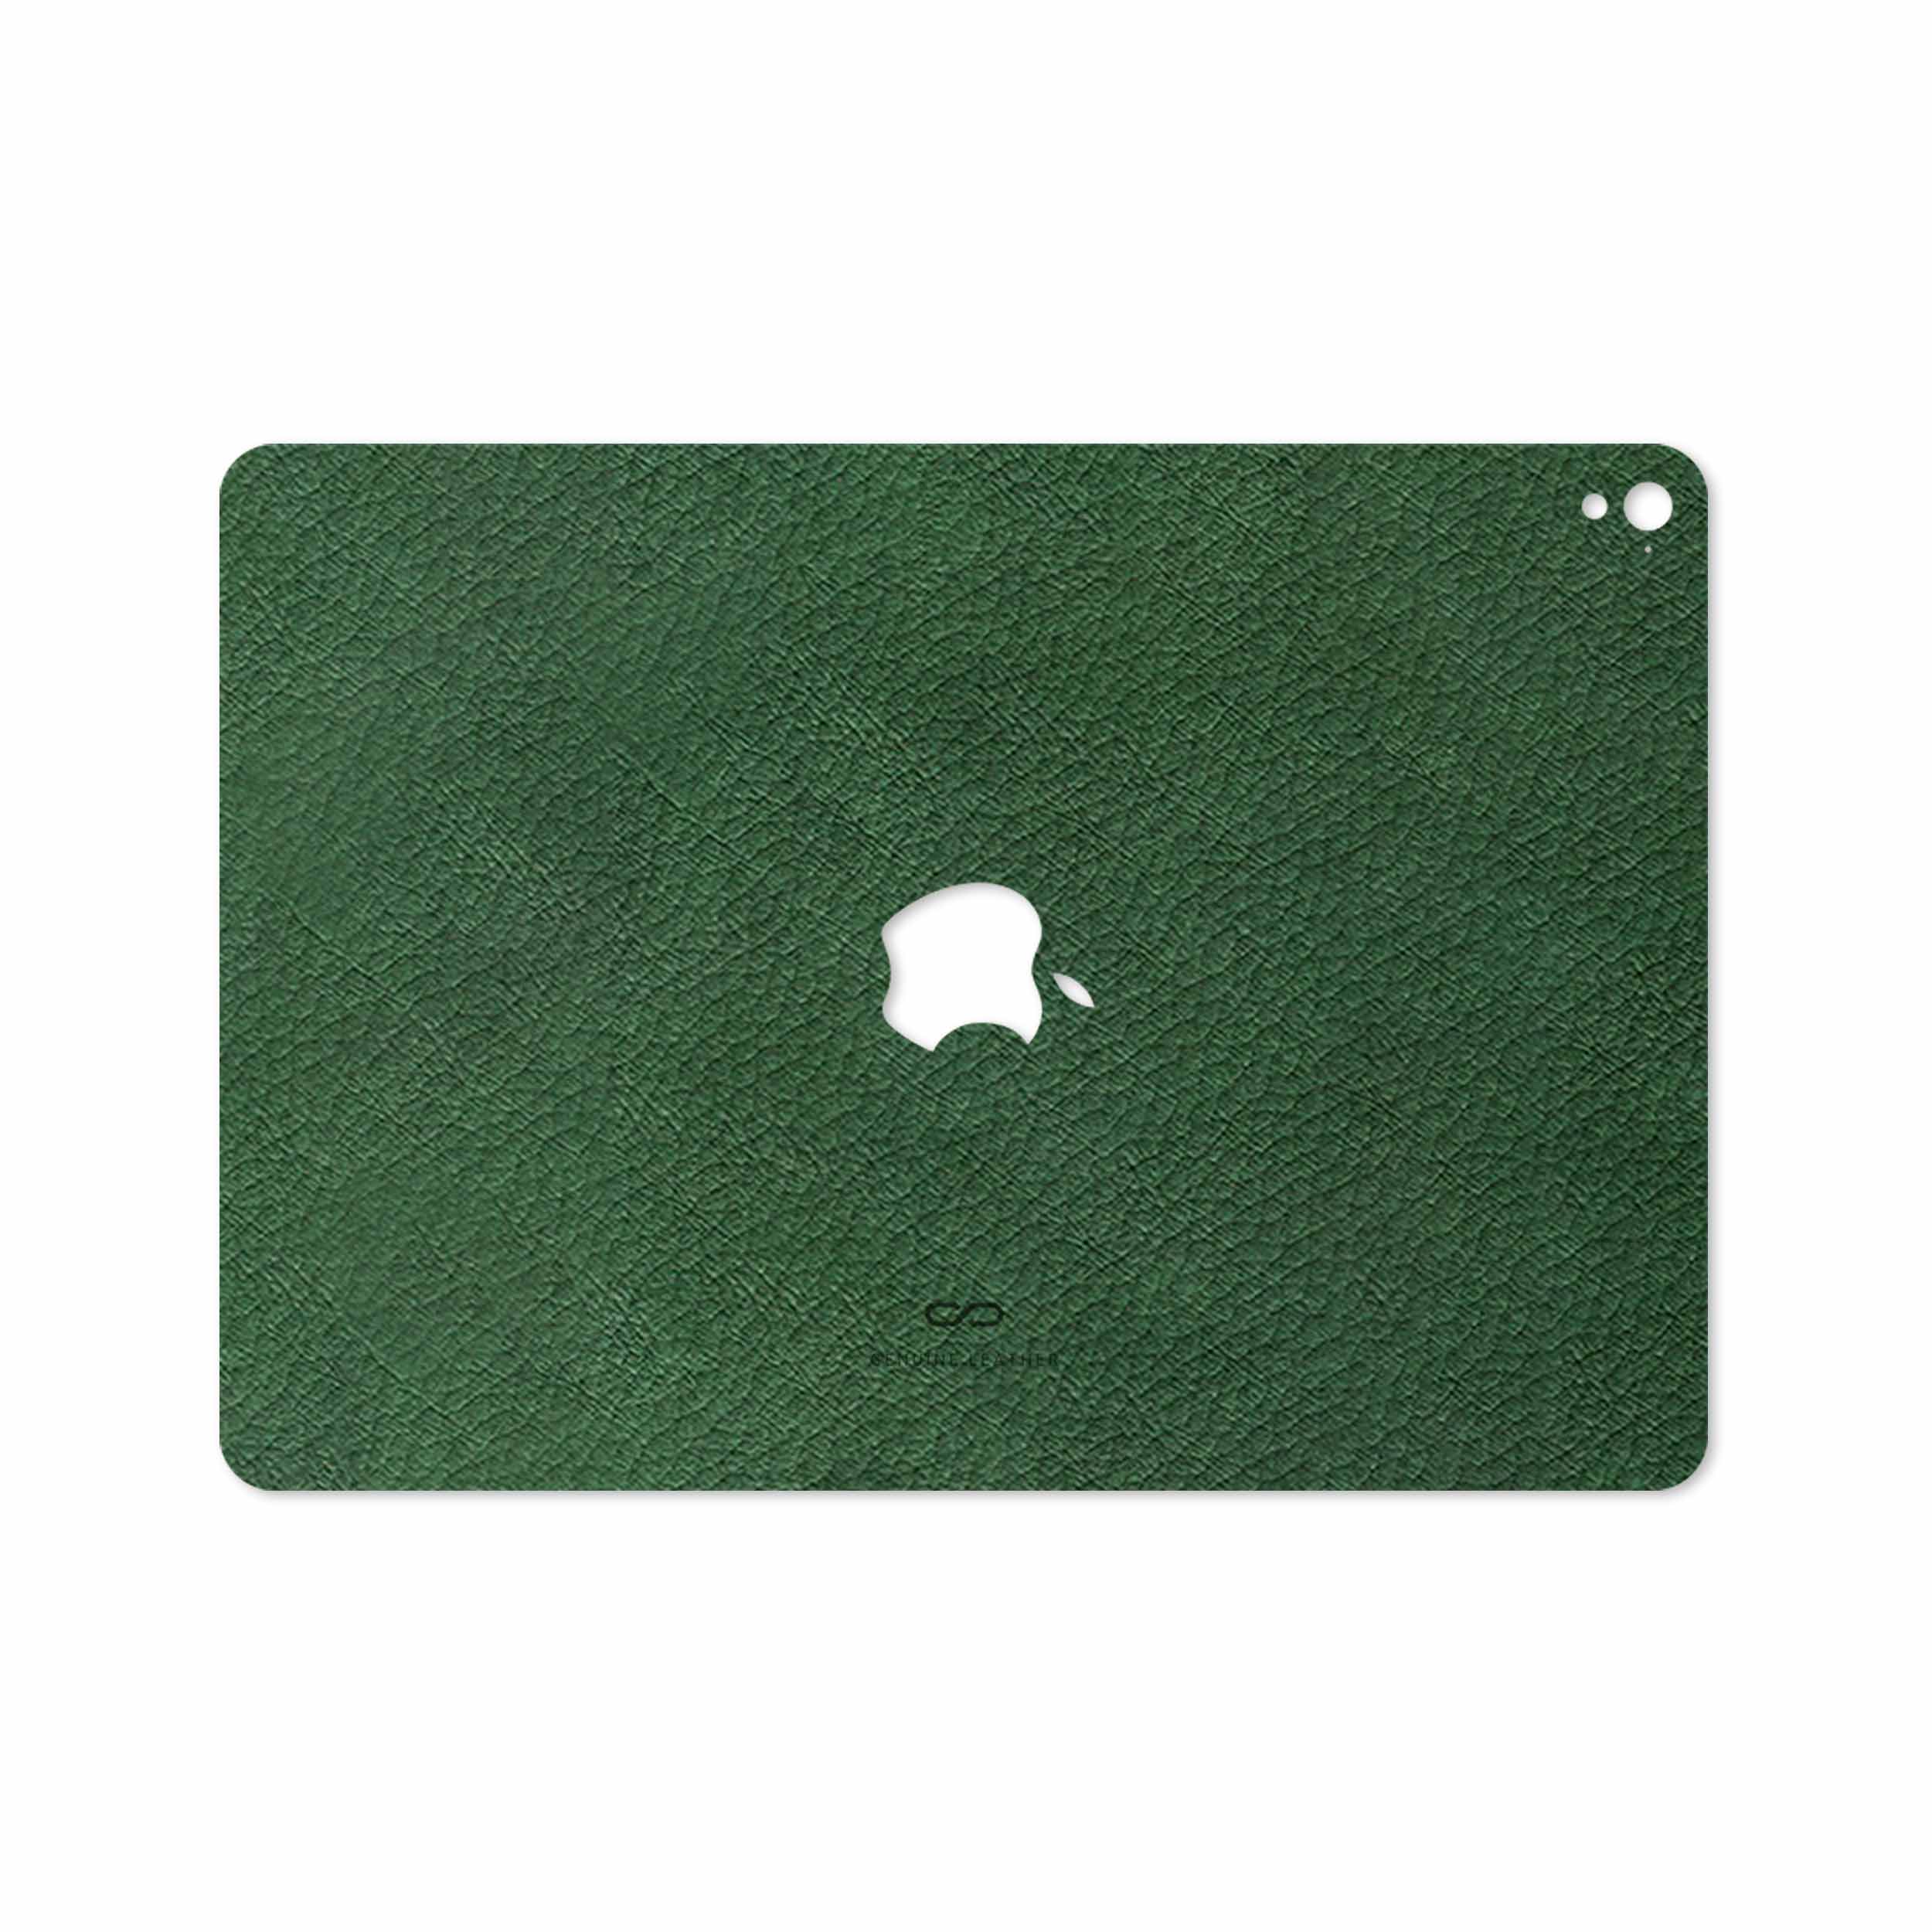 برچسب پوششی ماهوت مدل Green-Leather مناسب برای تبلت اپل iPad Pro 9.7 2016 A1675